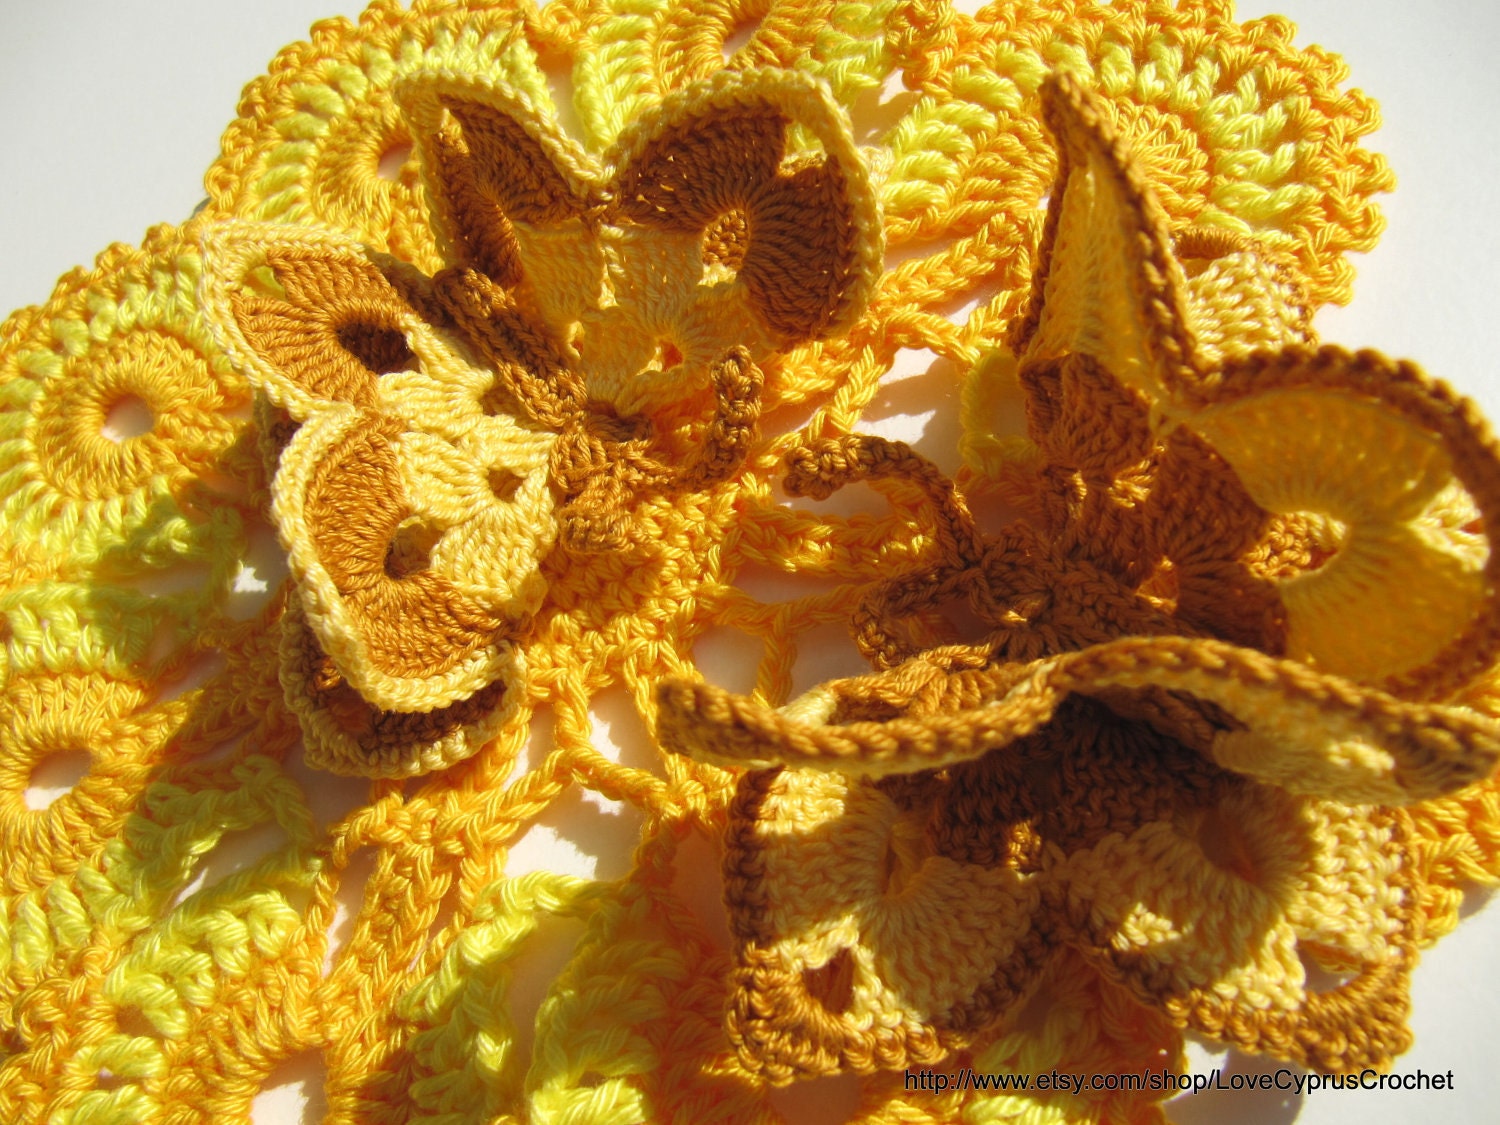 CROCHET BUTTERFLY 6 (pc) , Crochet Yellow Brown Butterfly, Crochet Easter Accessories, Cyprus Crochet Lyubava